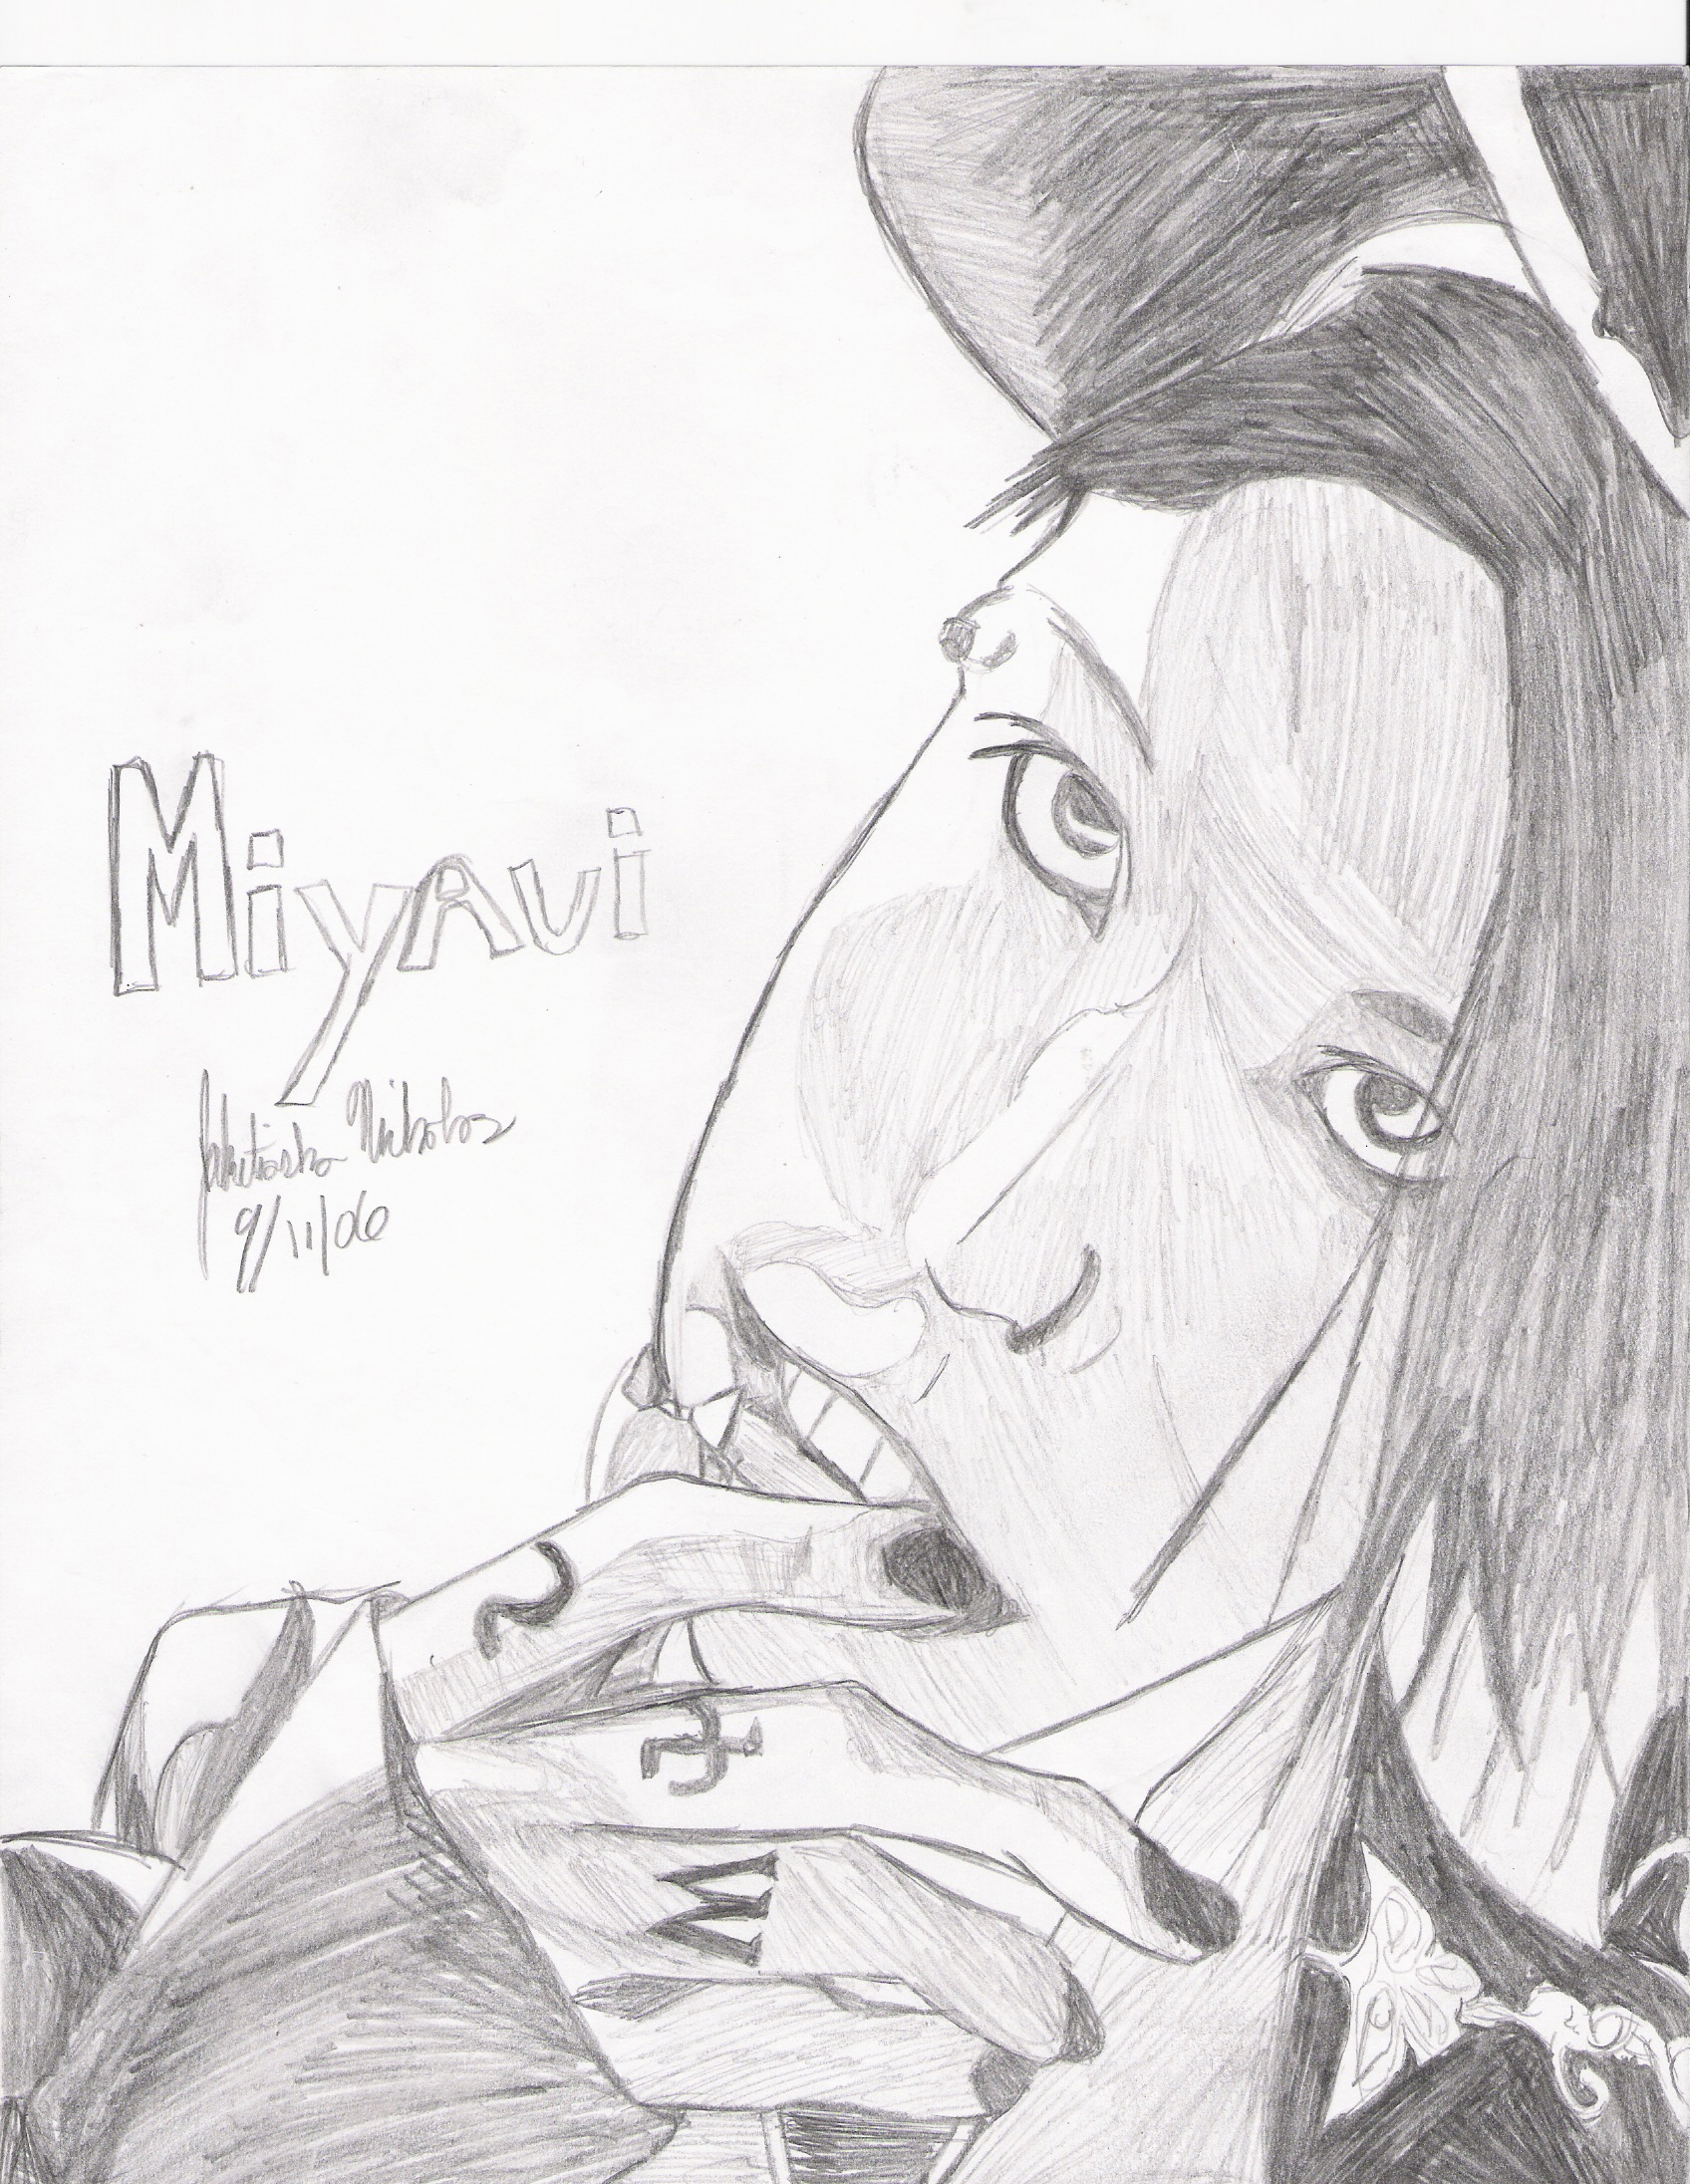 Miyavi by vegetagirl007